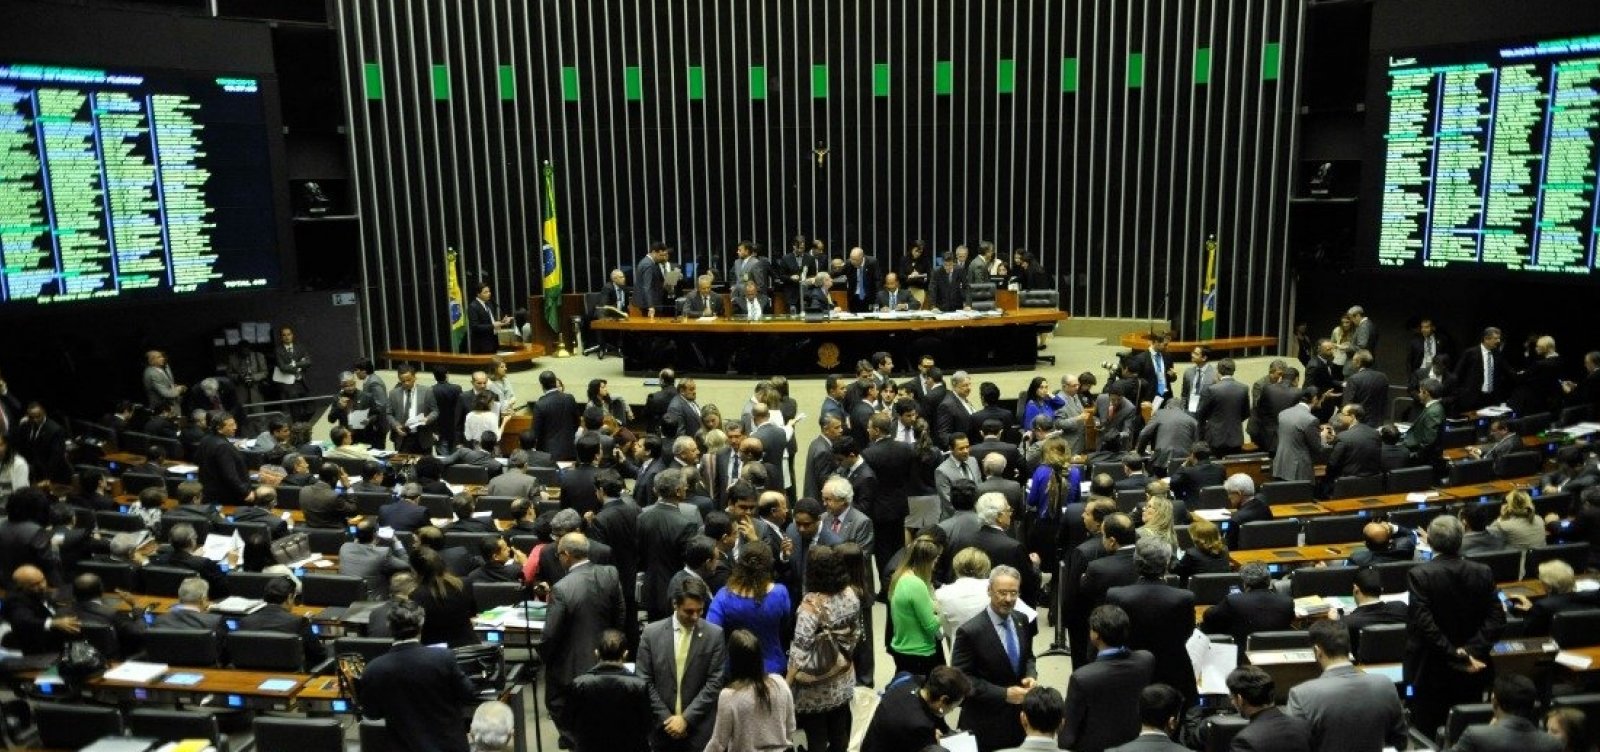 Liderada pelo PT, oposição tenta formar bloco único na Câmara